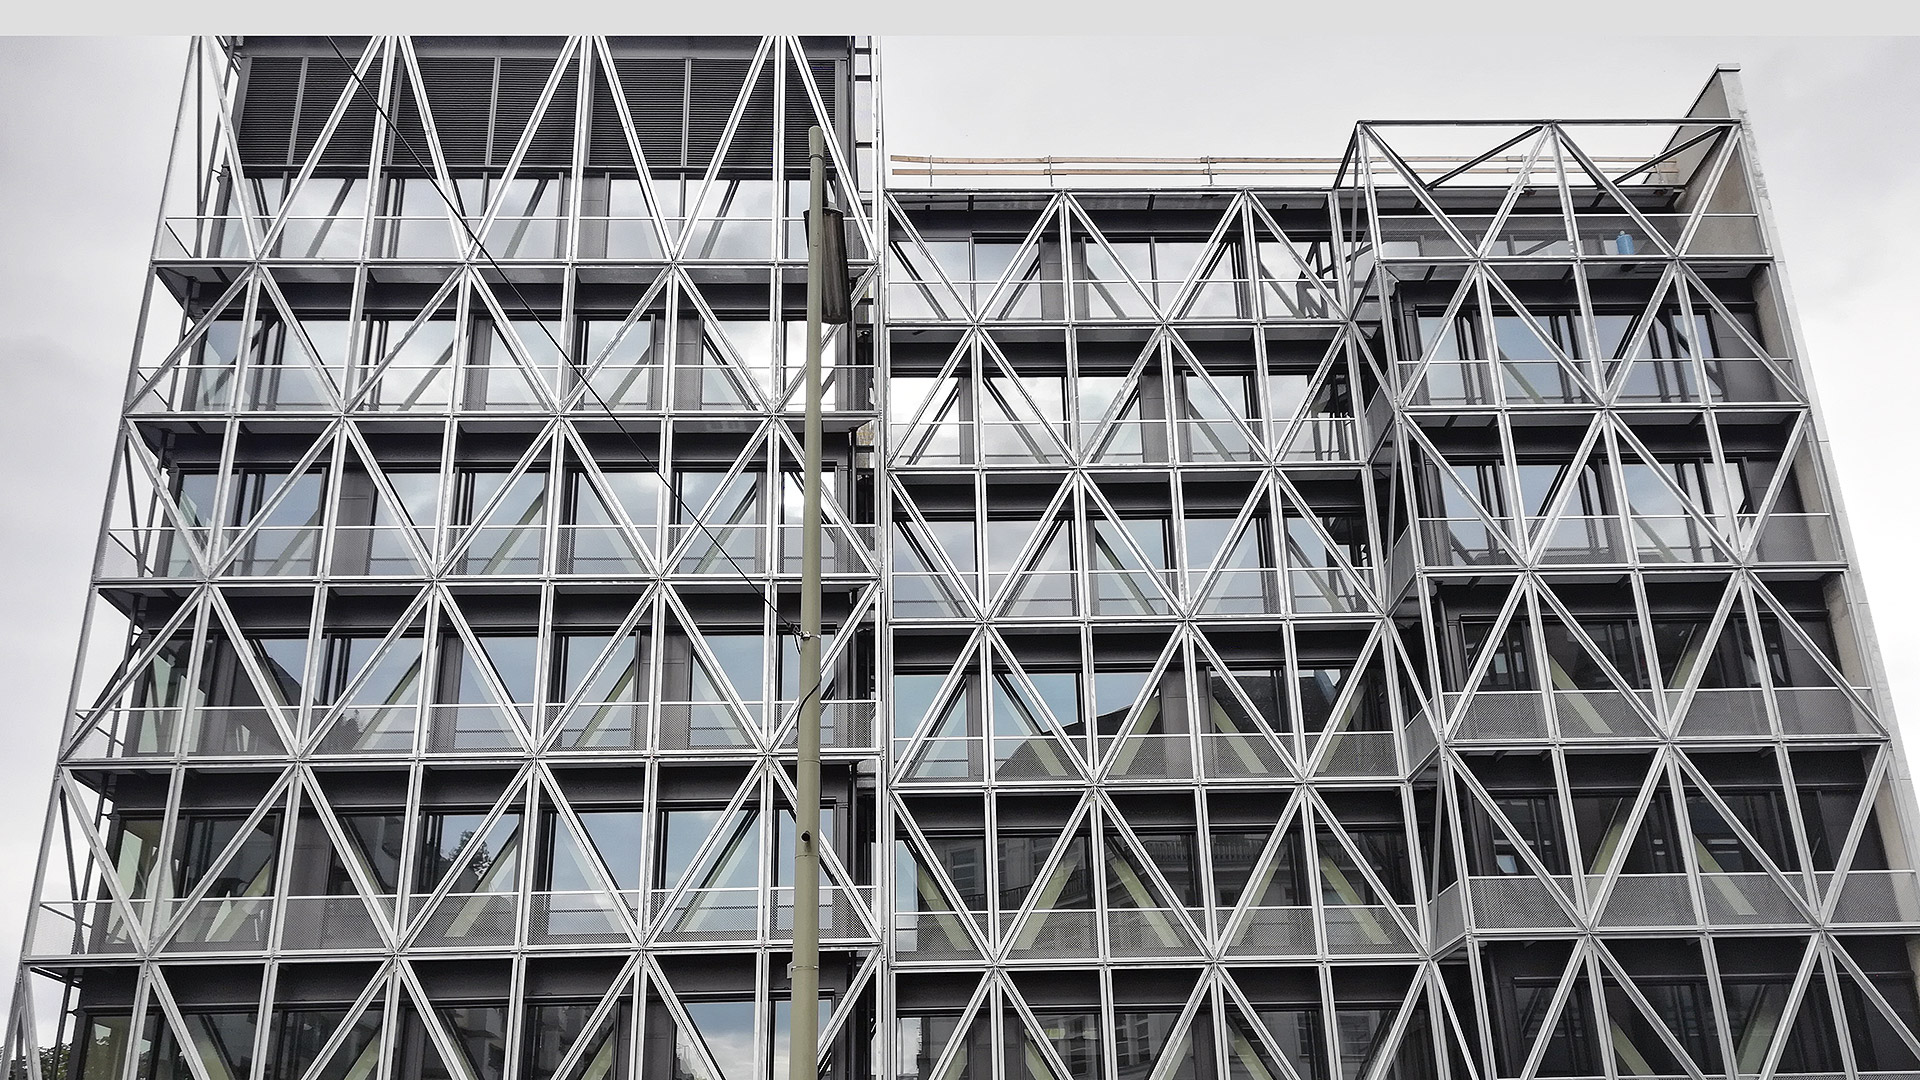 Neubau taz-Redaktionsgebäude in Berlin. Unsere Leistungen: Wärmeschutz, Schallschutz, Raumakustik, Gebäudesimulation